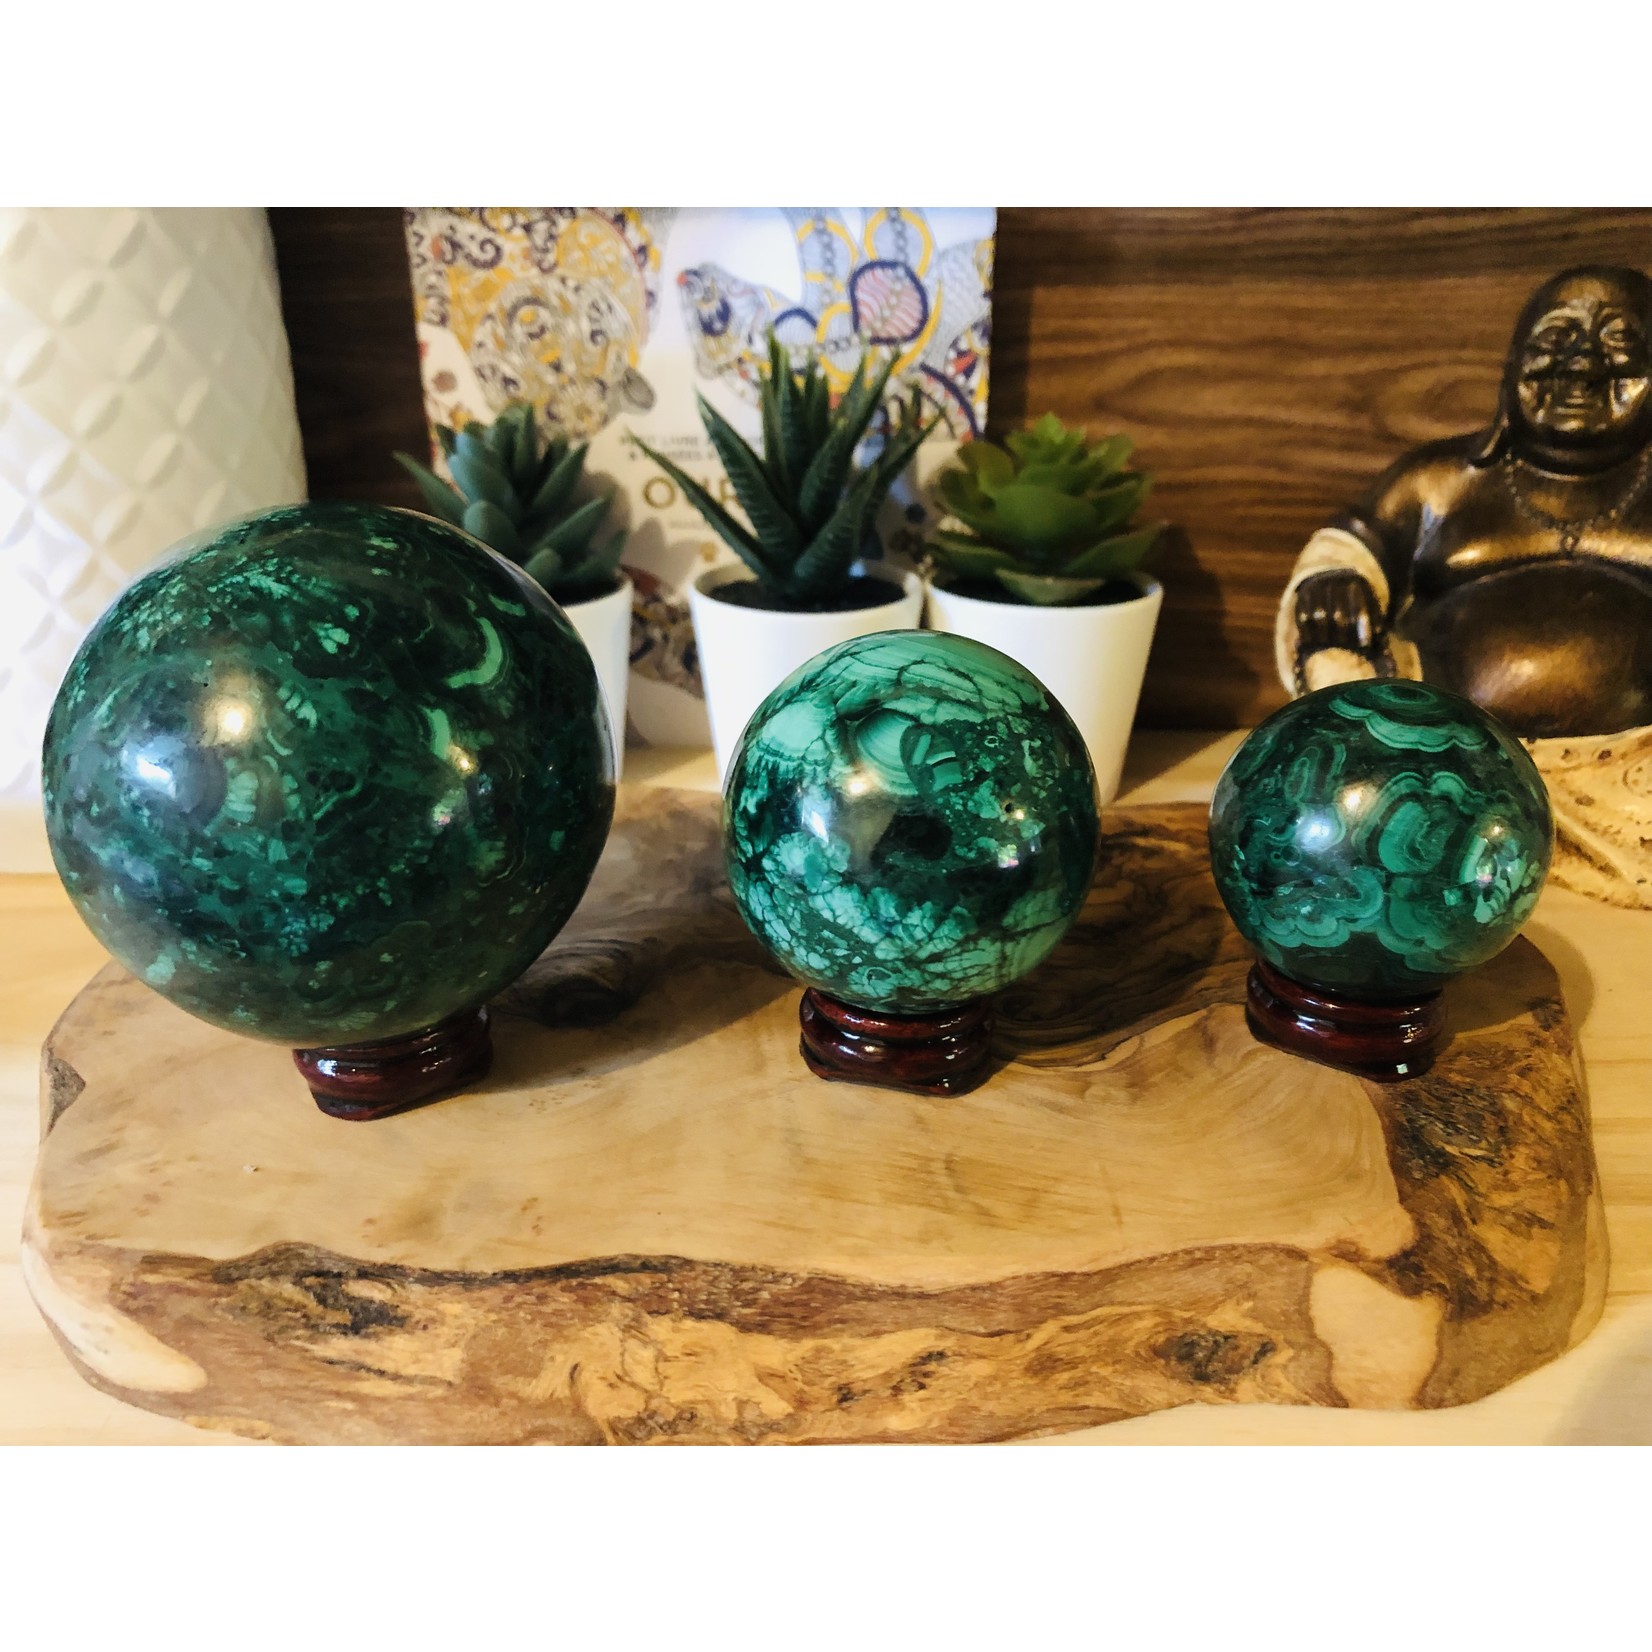 parfait support en bois pour sphère, base de bois pour boule de cristal, socle artisanal en bois rouge verni